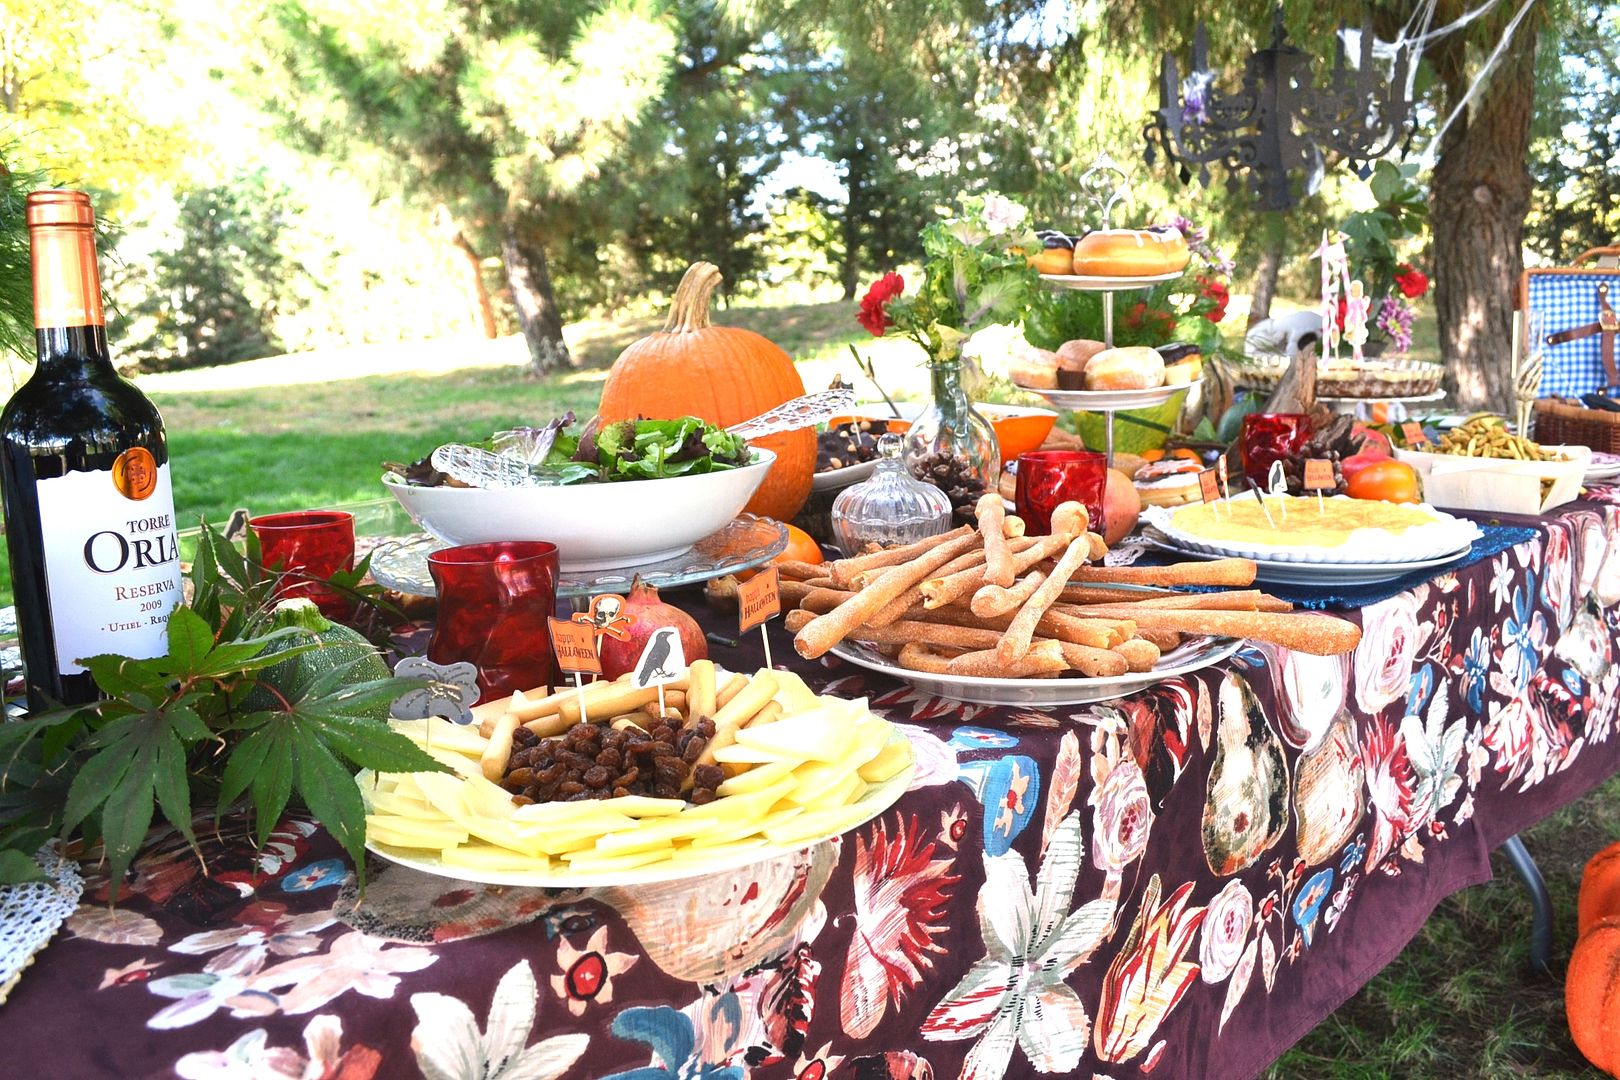  bandejas con comida en un parque celbración de cumpleaños original en otoño